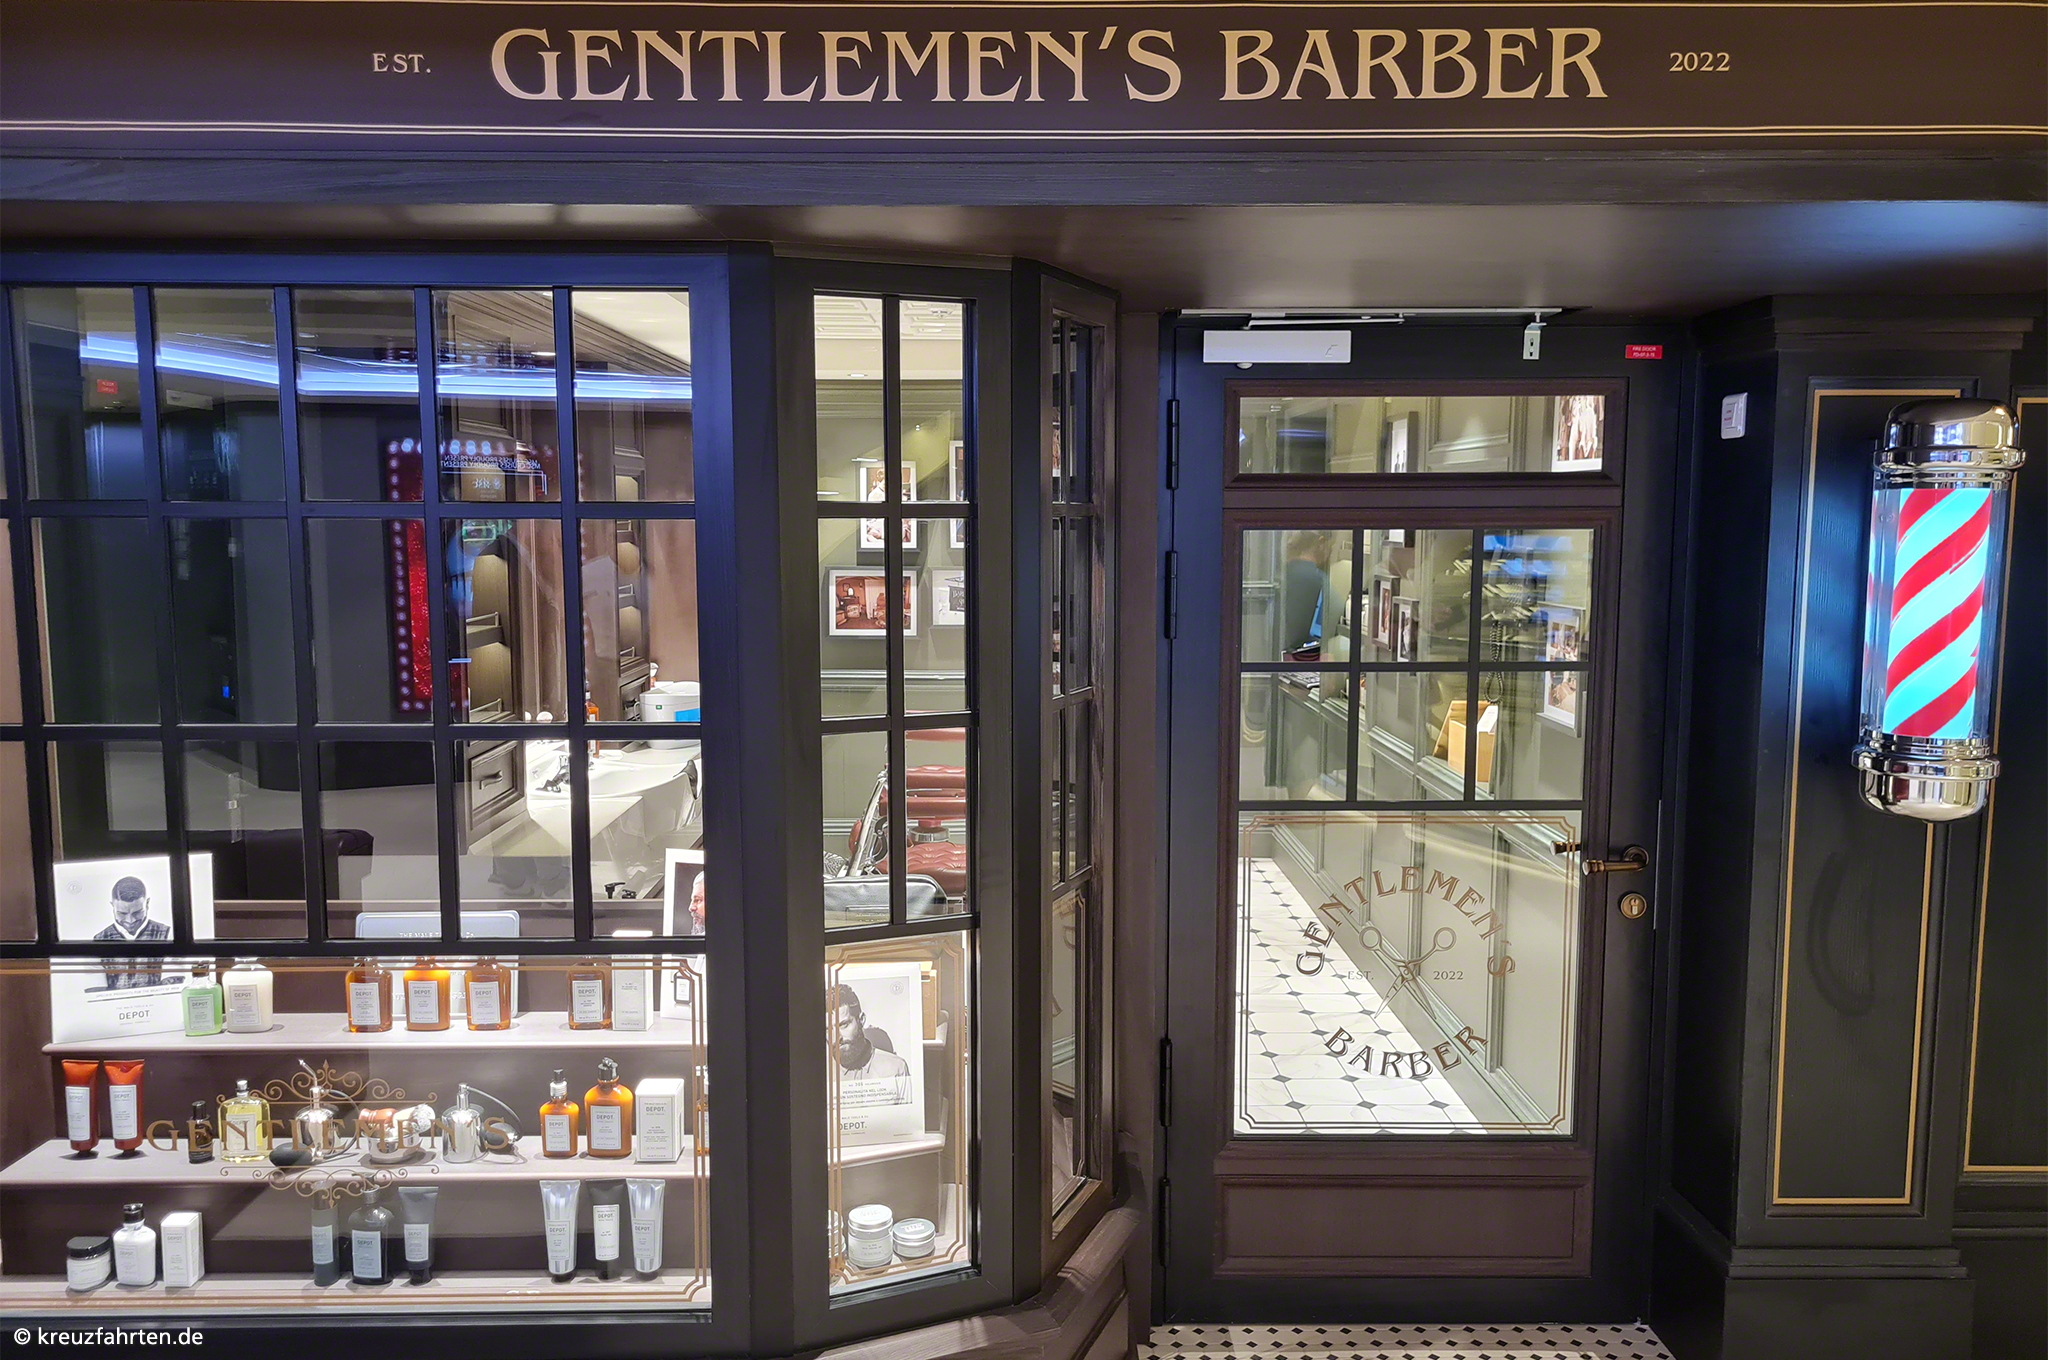 Gentlemen's Barber